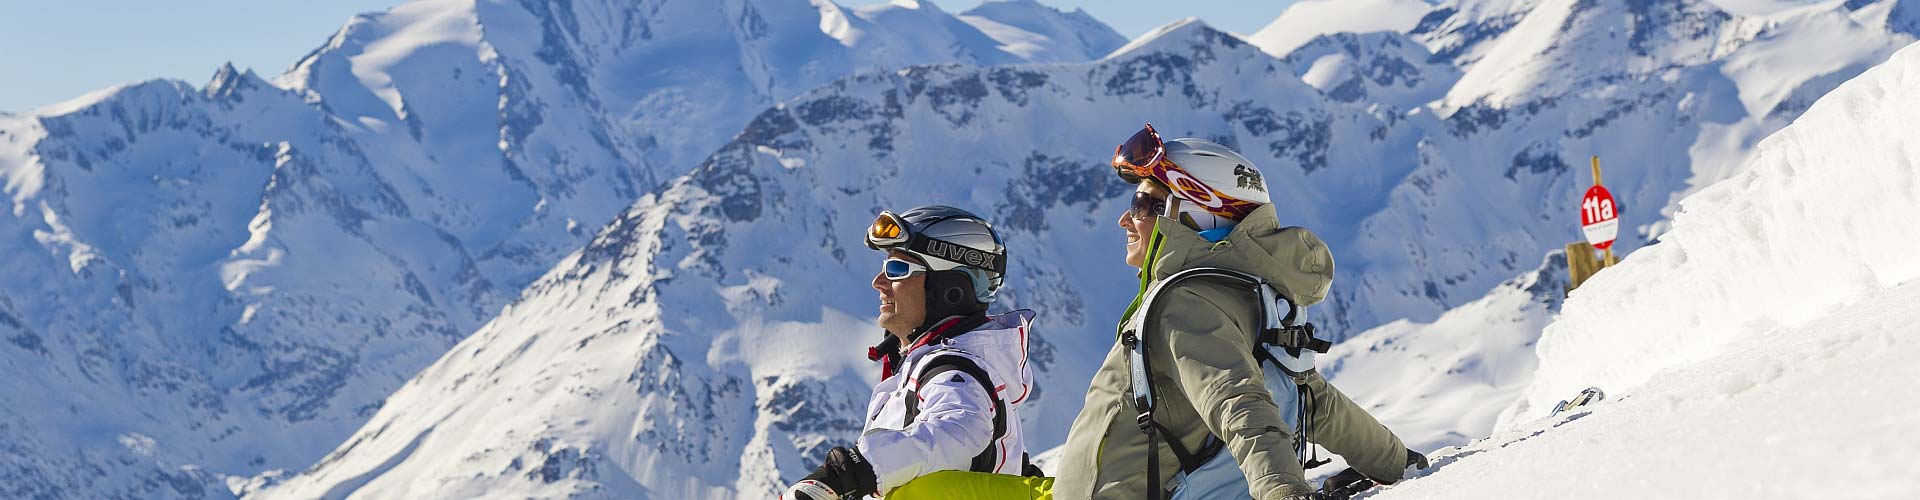 Singlereisen in die Schweiz – Skireisen und mehr